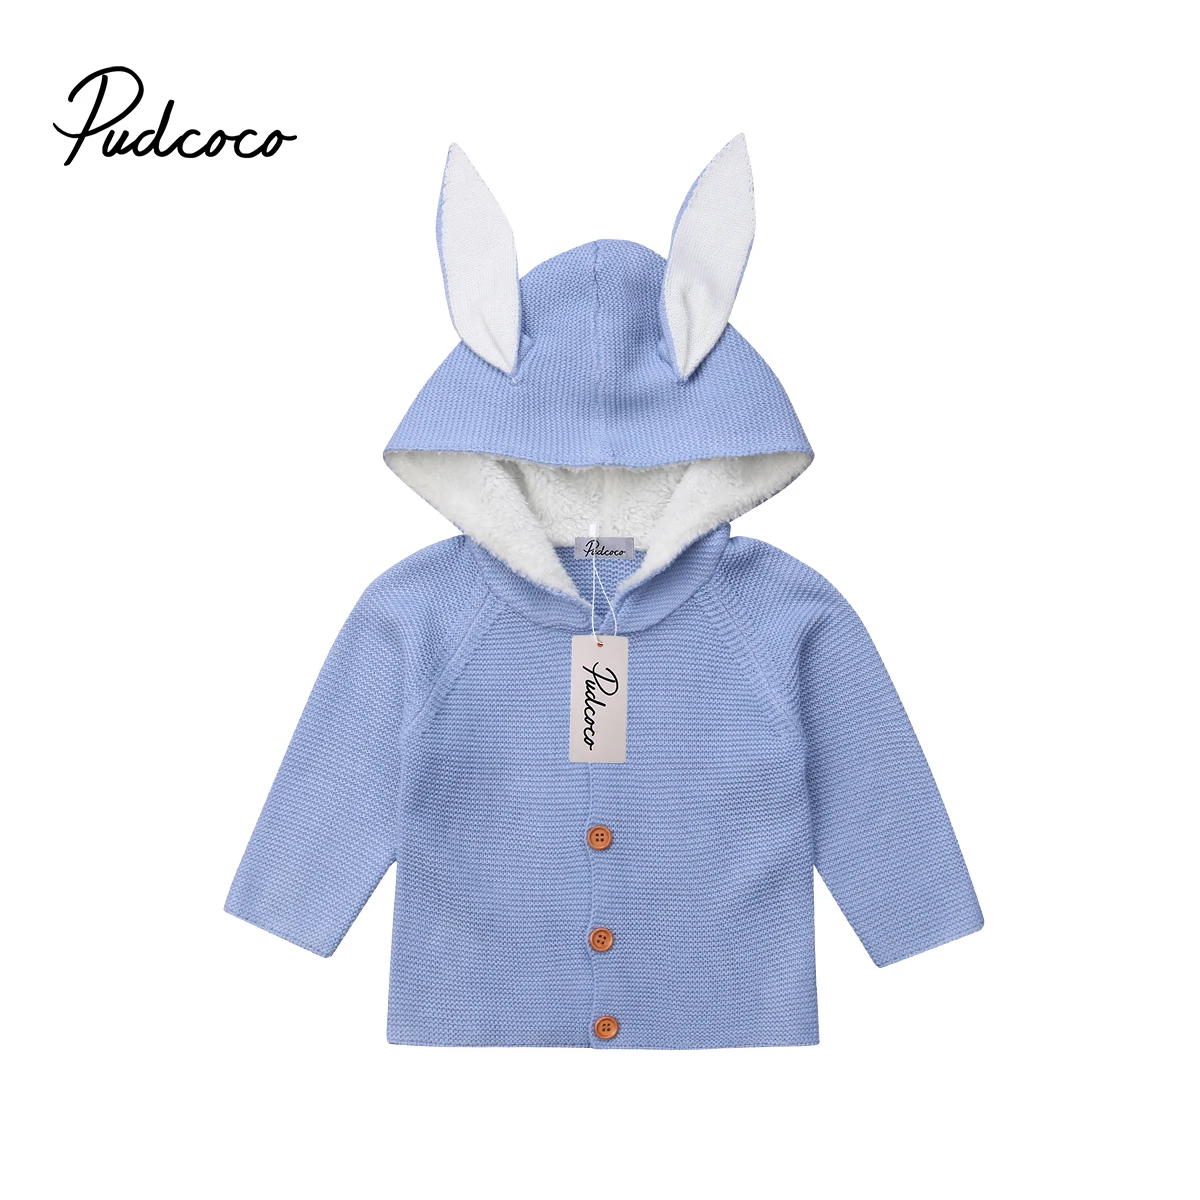 Фото Pudcoco 2018 новая детская одежда для малышей вязаный свитер маленьких девочек и